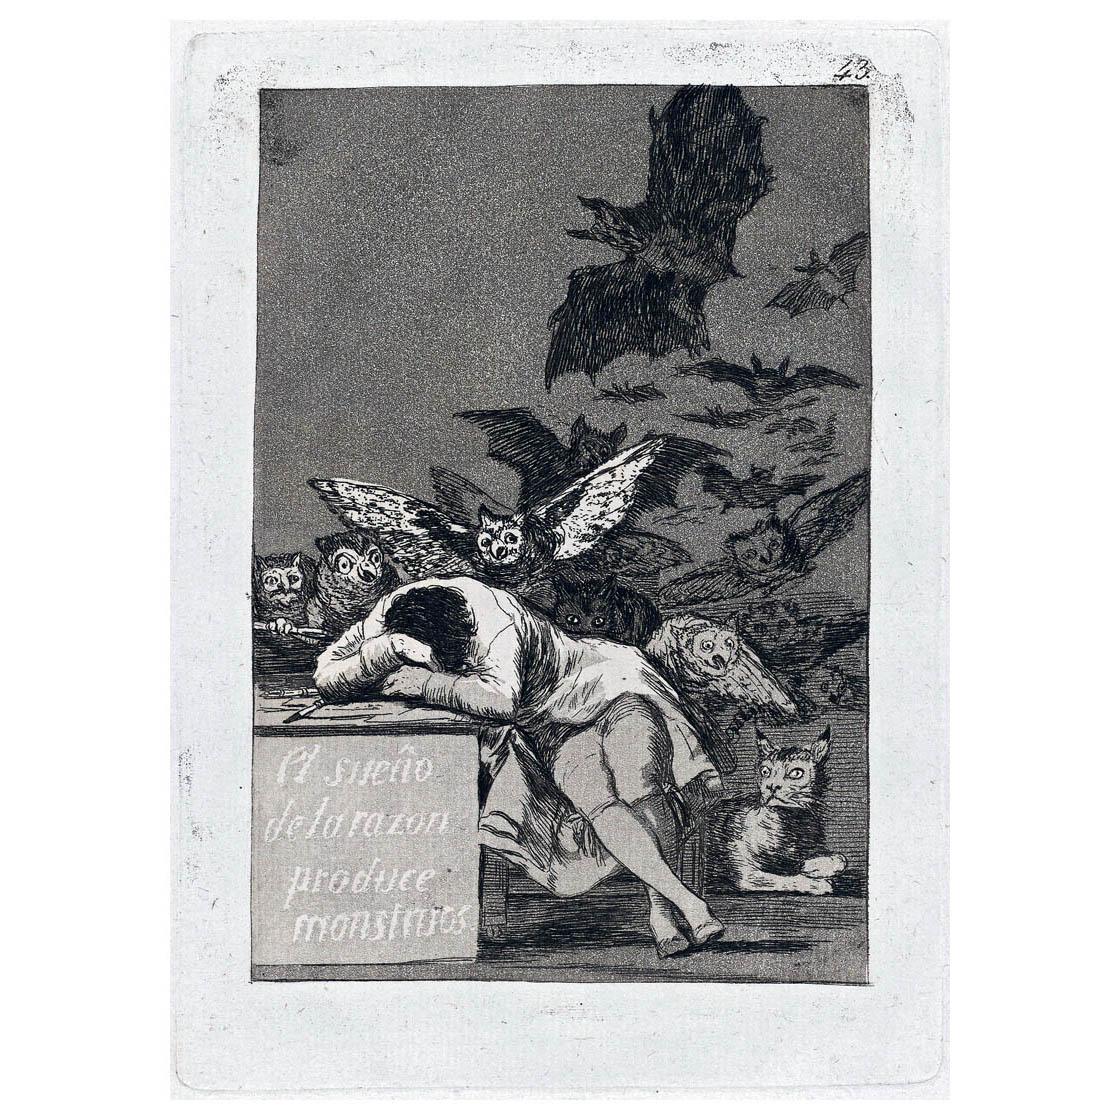 Francisco de Goya. El sueno de la razon produce monstrous (Los Caprichos p.43). 1799